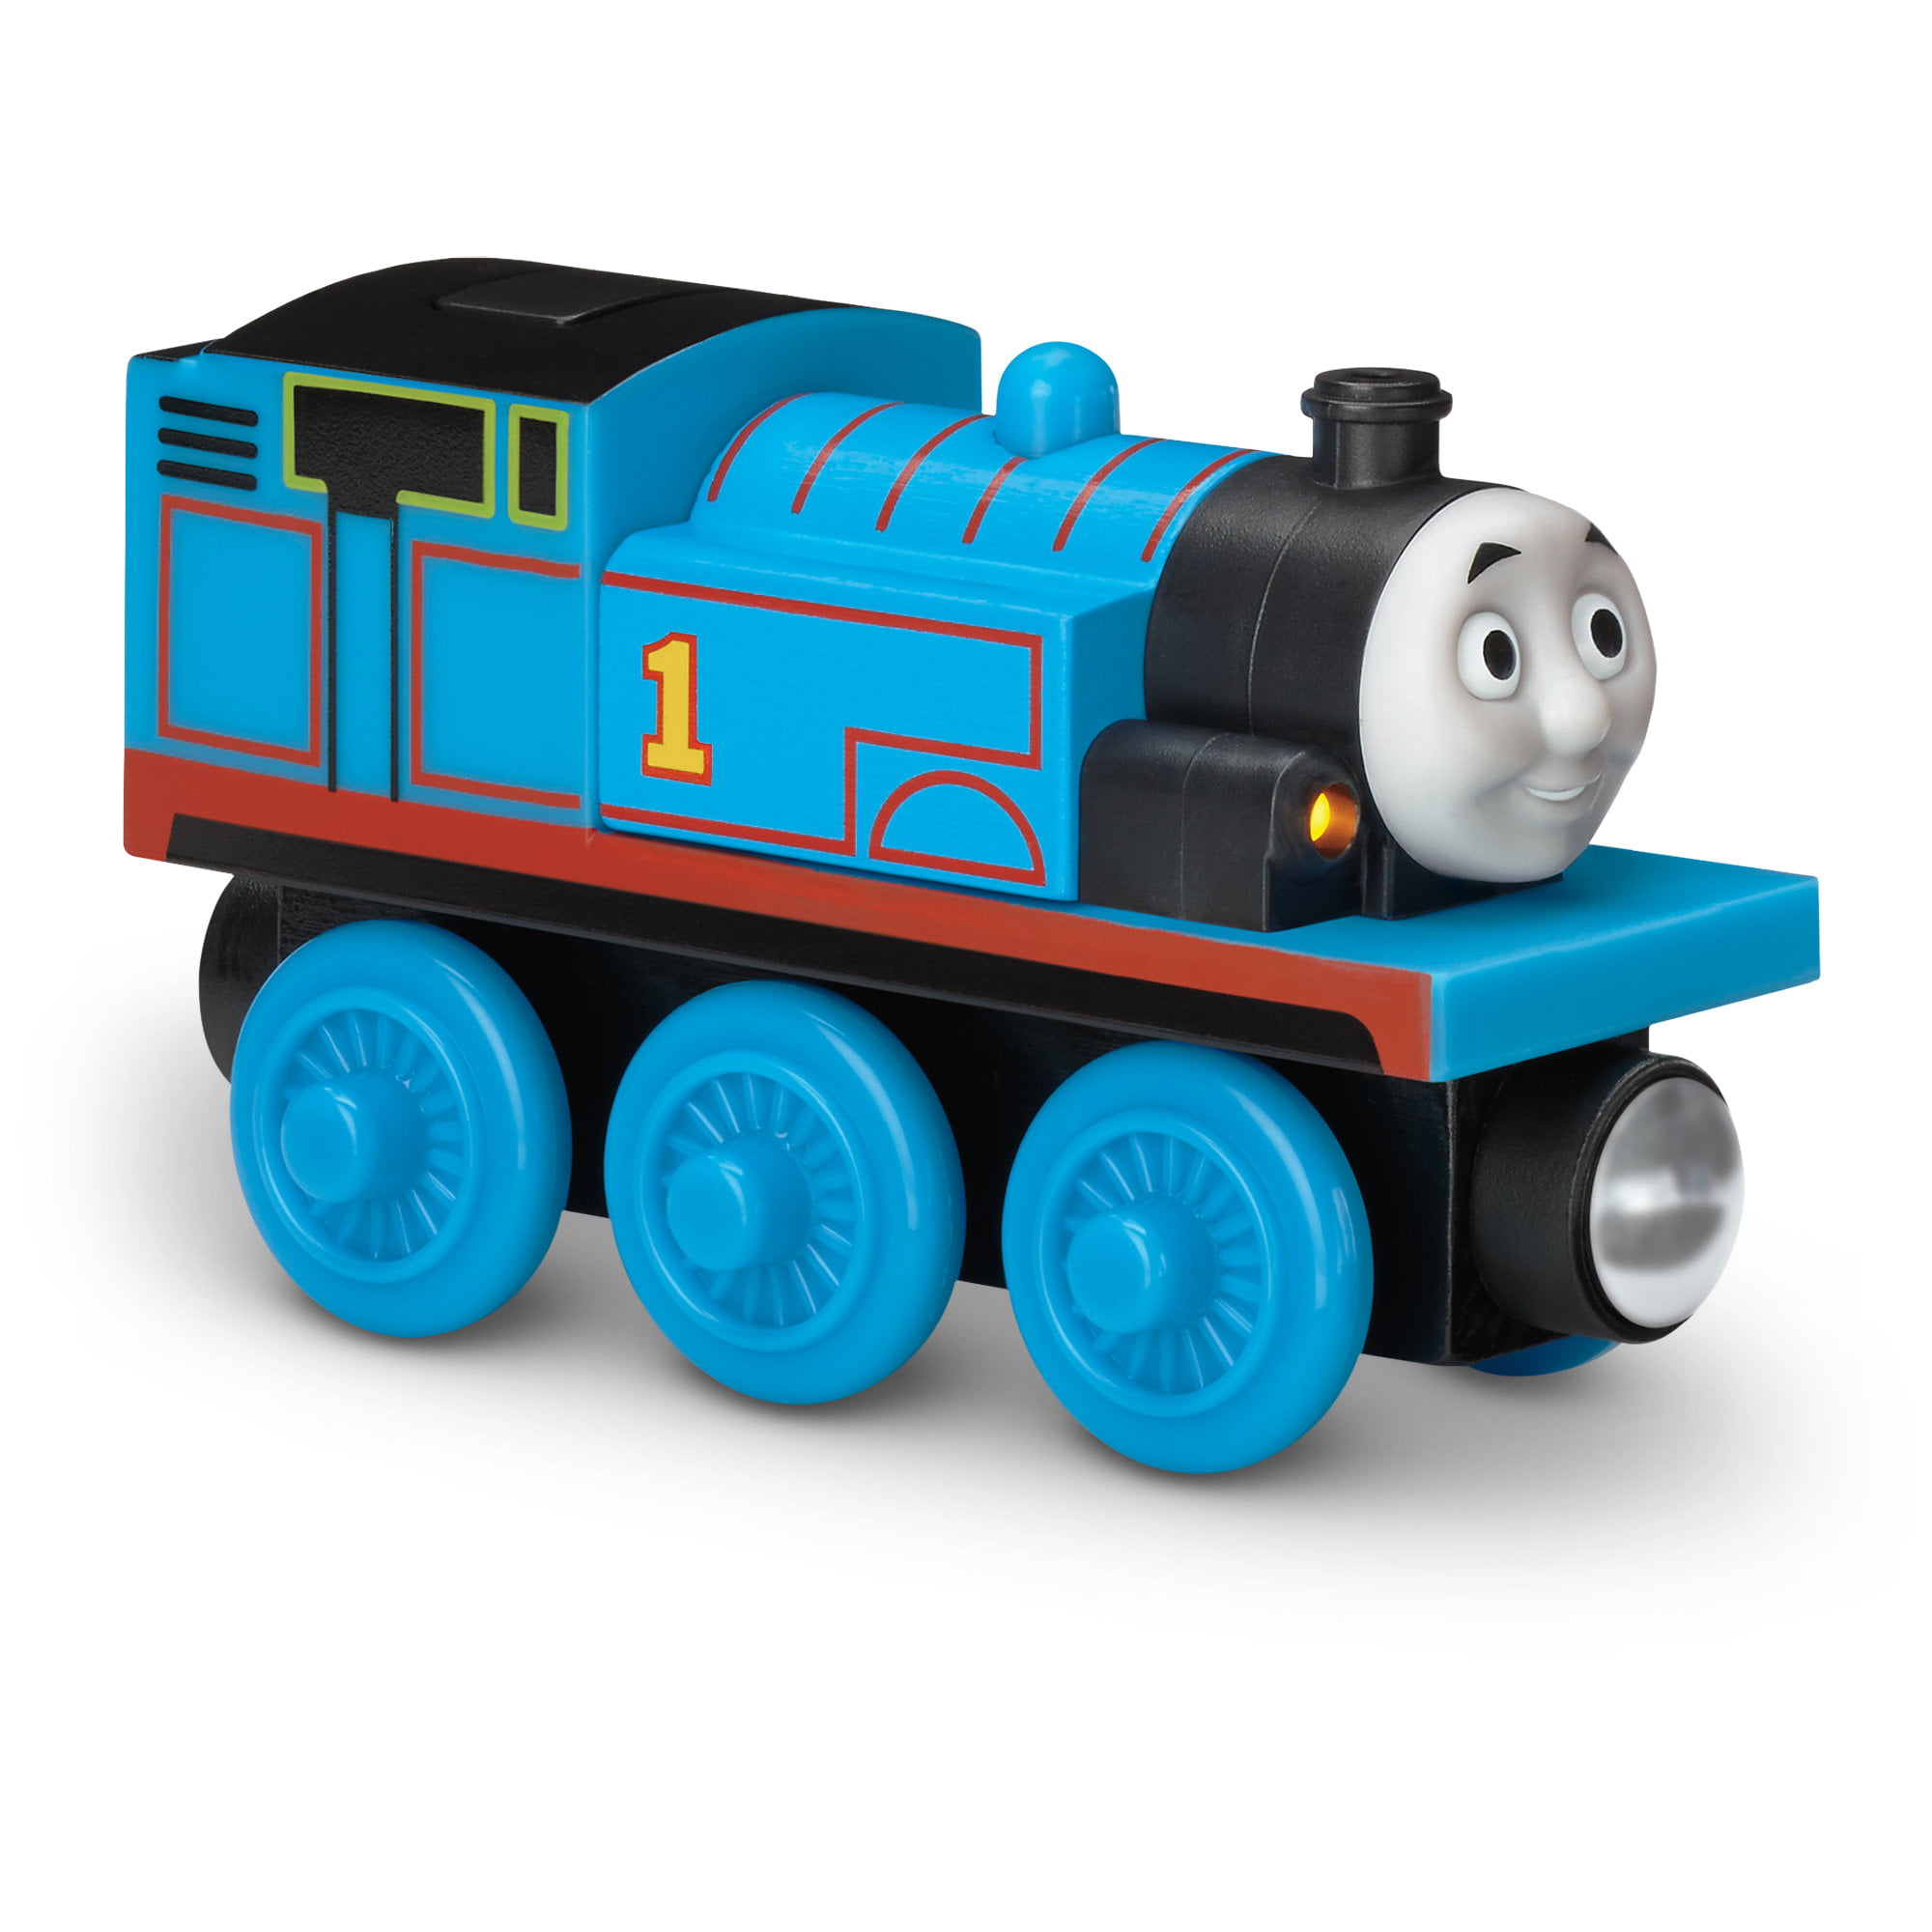 Thomas & Friends Wooden Railway, Talking Thomas